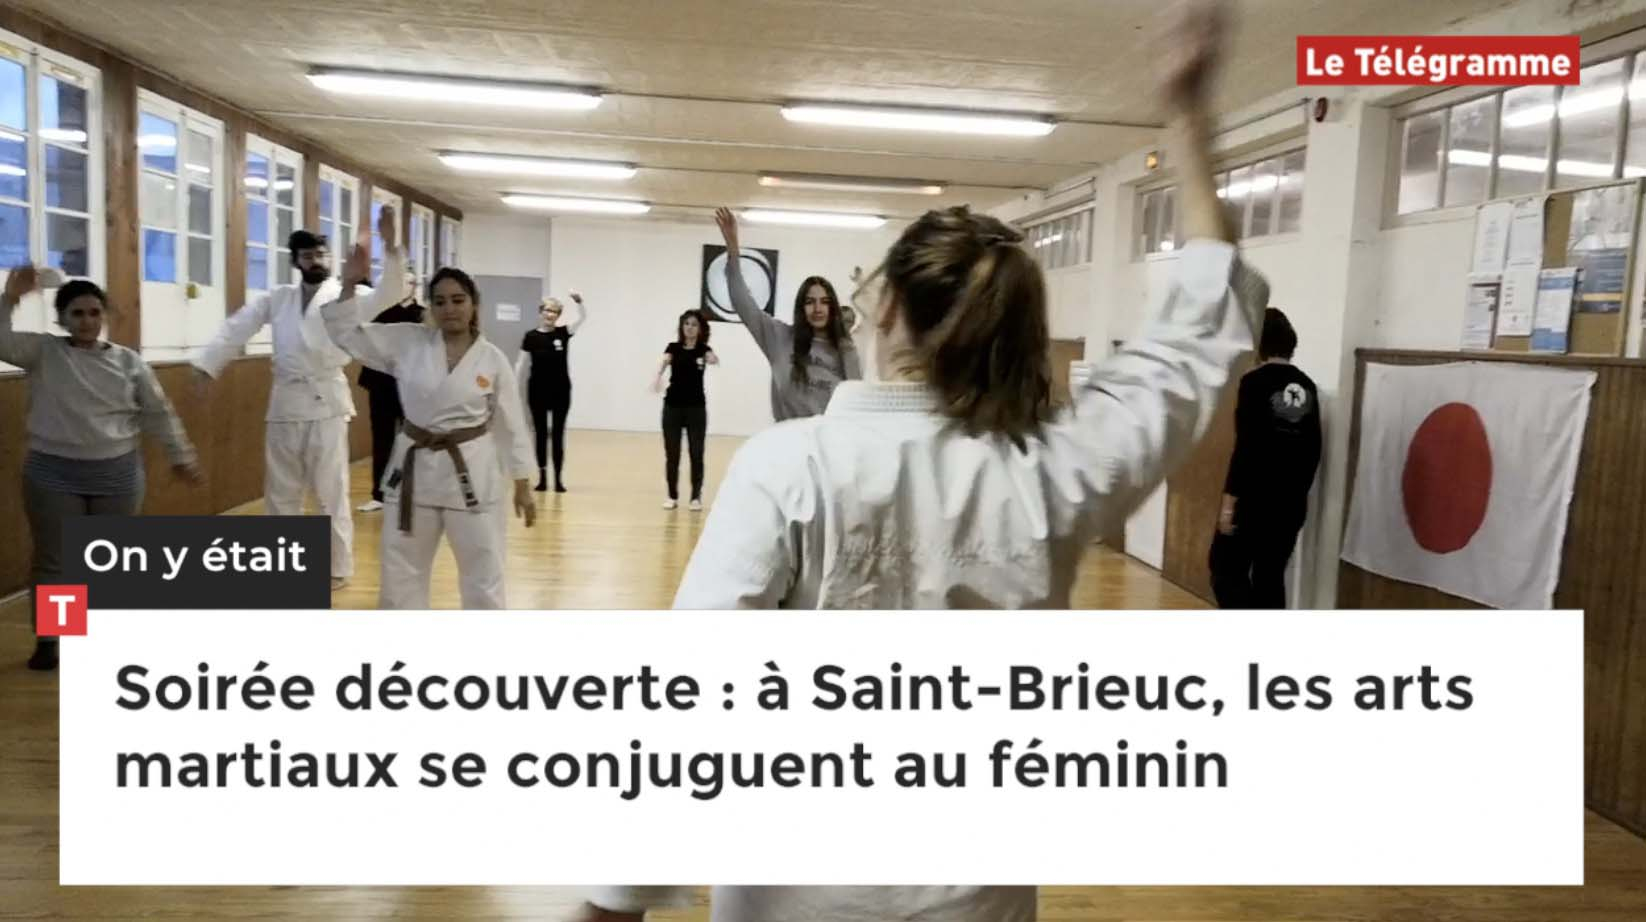 Soirée découverte : à Saint-Brieuc, les arts martiaux se conjuguent au féminin (Le Télégramme)